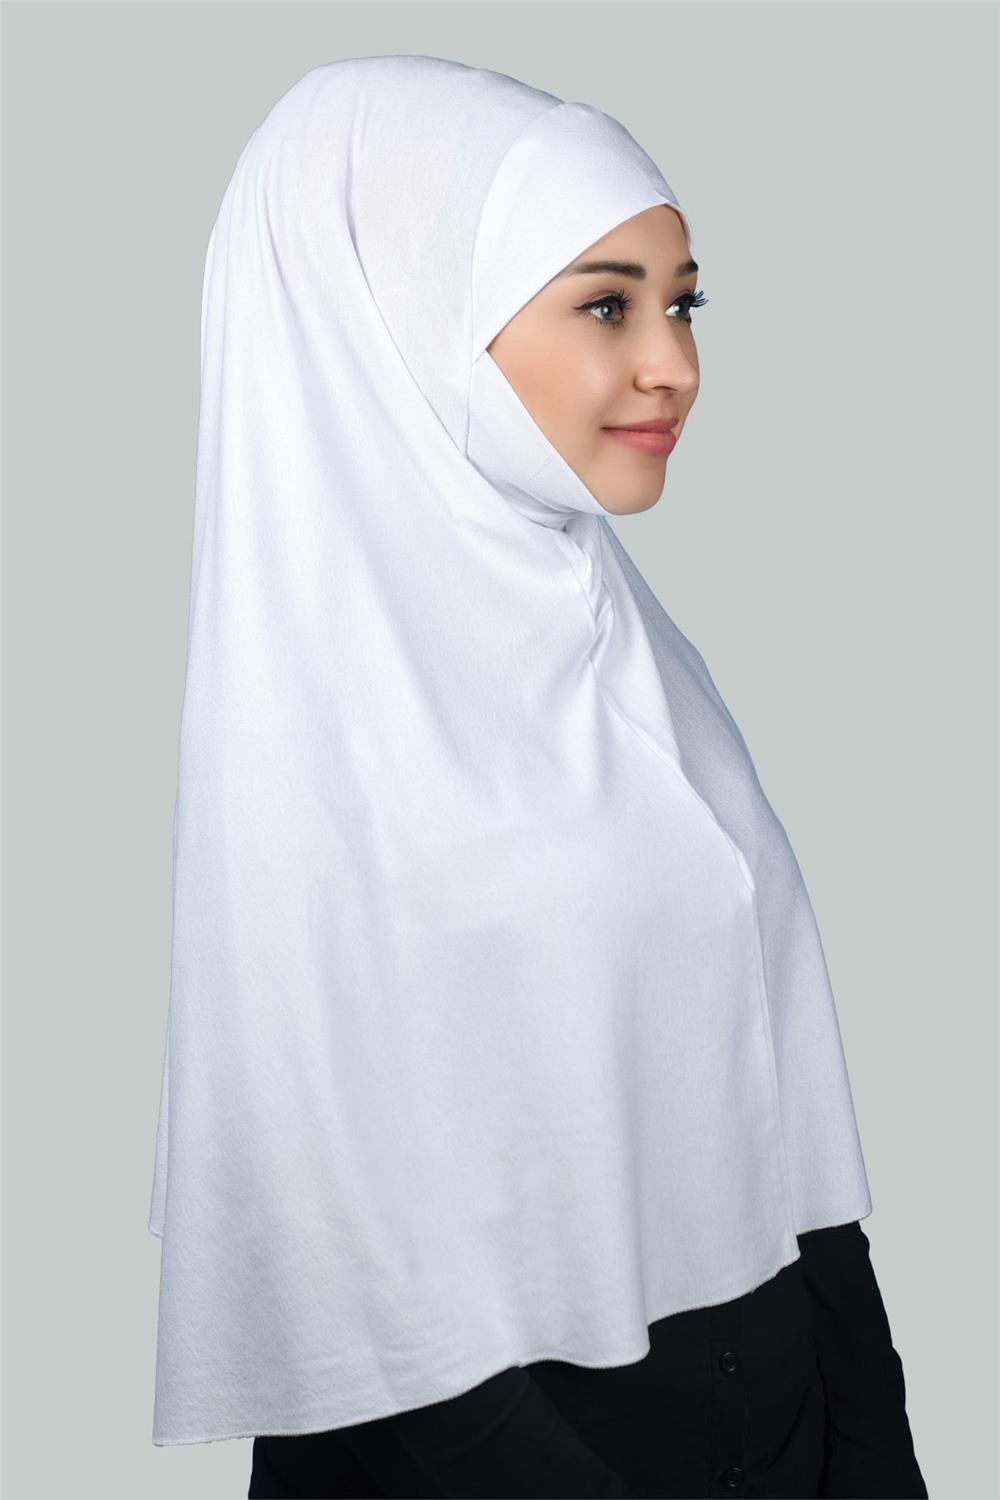 Hazır Türban Peçeli Pratik Eşarp Tesettür Nikaplı Hijab - Namaz Örtüsü  Sufle (3XL) - Beyaz